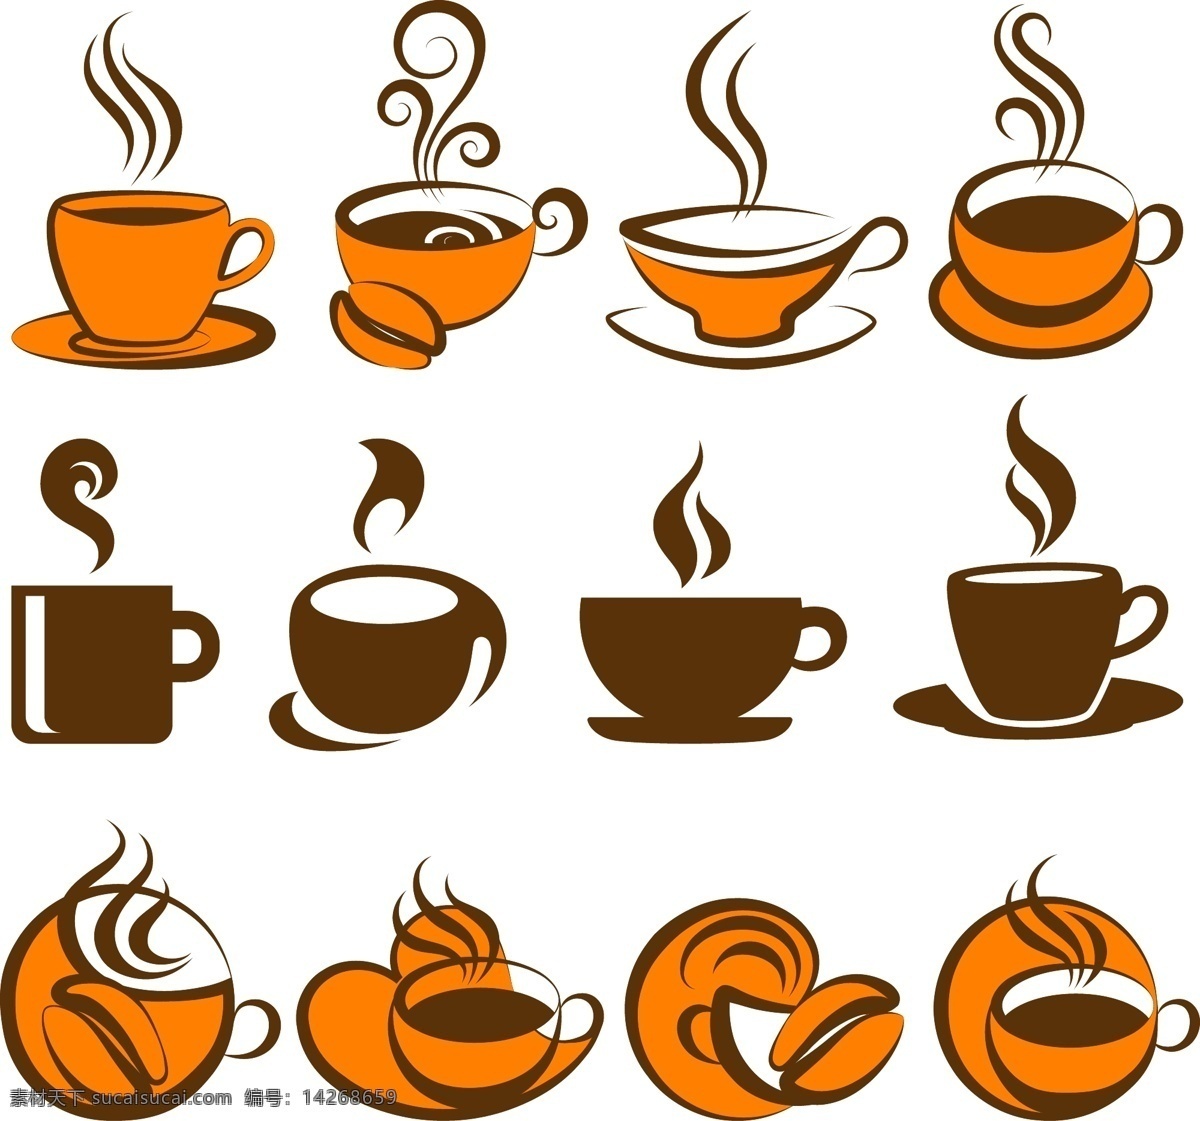 咖啡 咖啡杯 咖啡设计 咖啡标签 咖啡图标 手绘咖啡 coffee 餐饮美食 生活百科